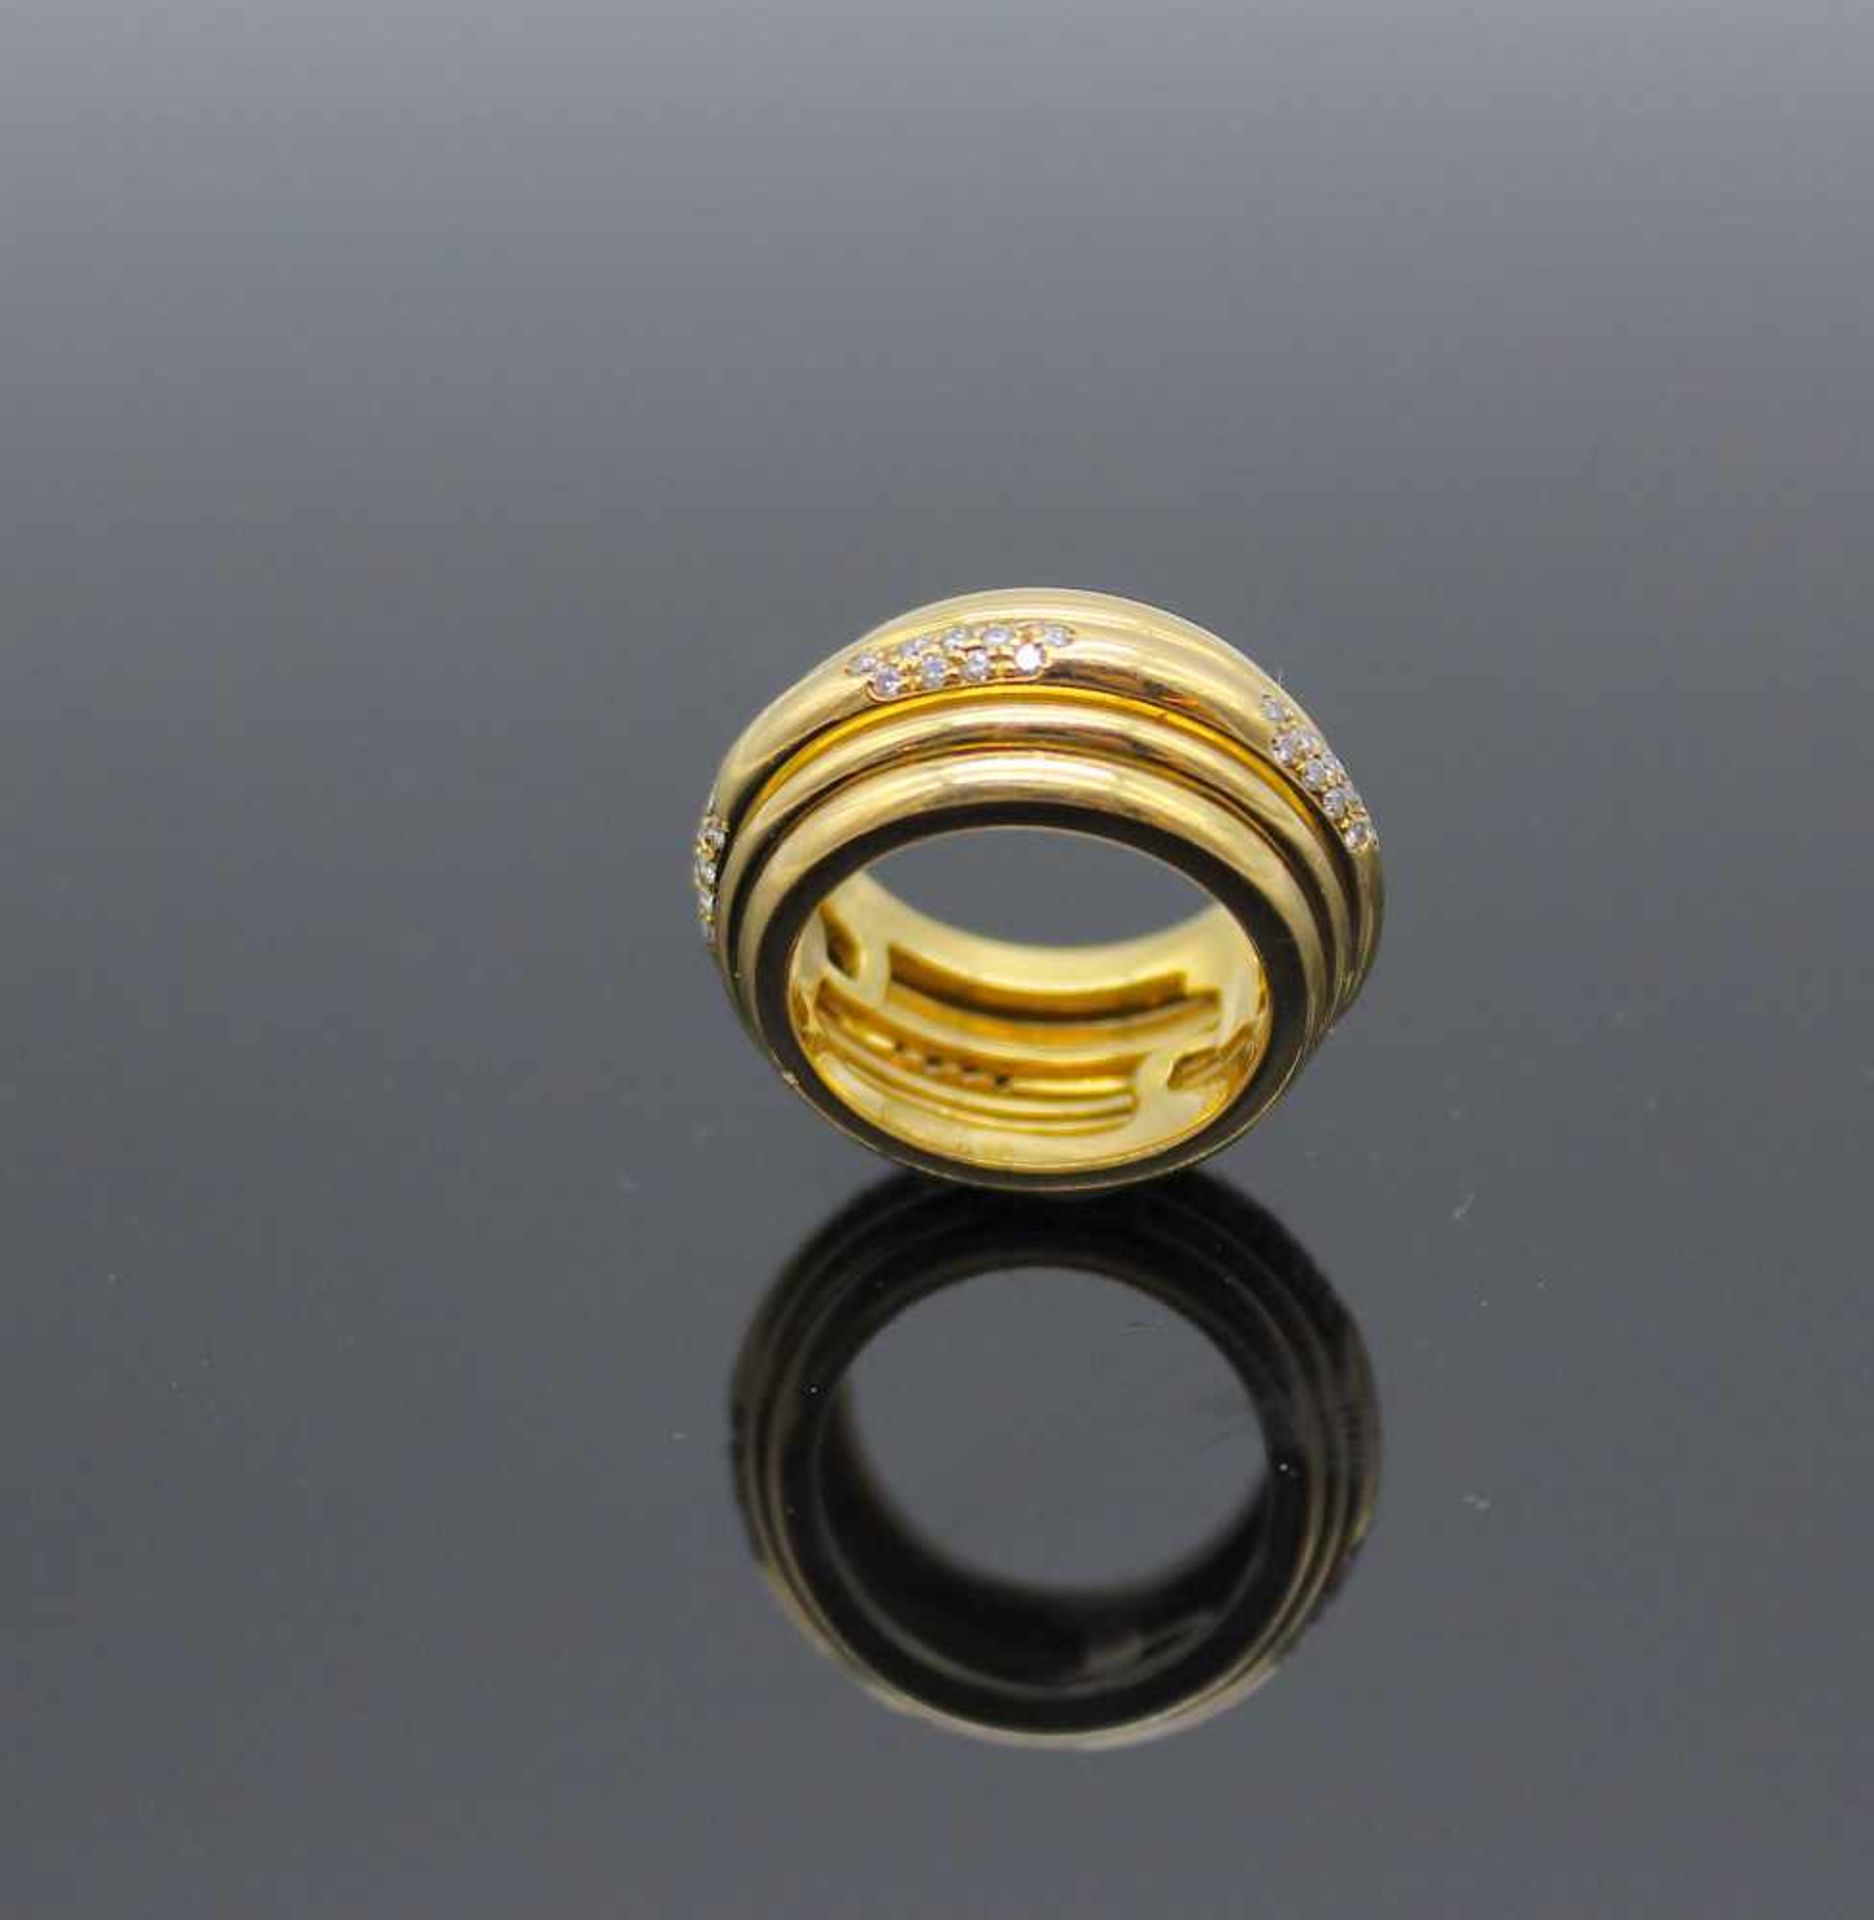 Piaget Possession Ring 1996in 750er Gold gearbeitet mit 65 kleinen Brillanten, gesamt ca. 0,65 ct, - Bild 3 aus 3